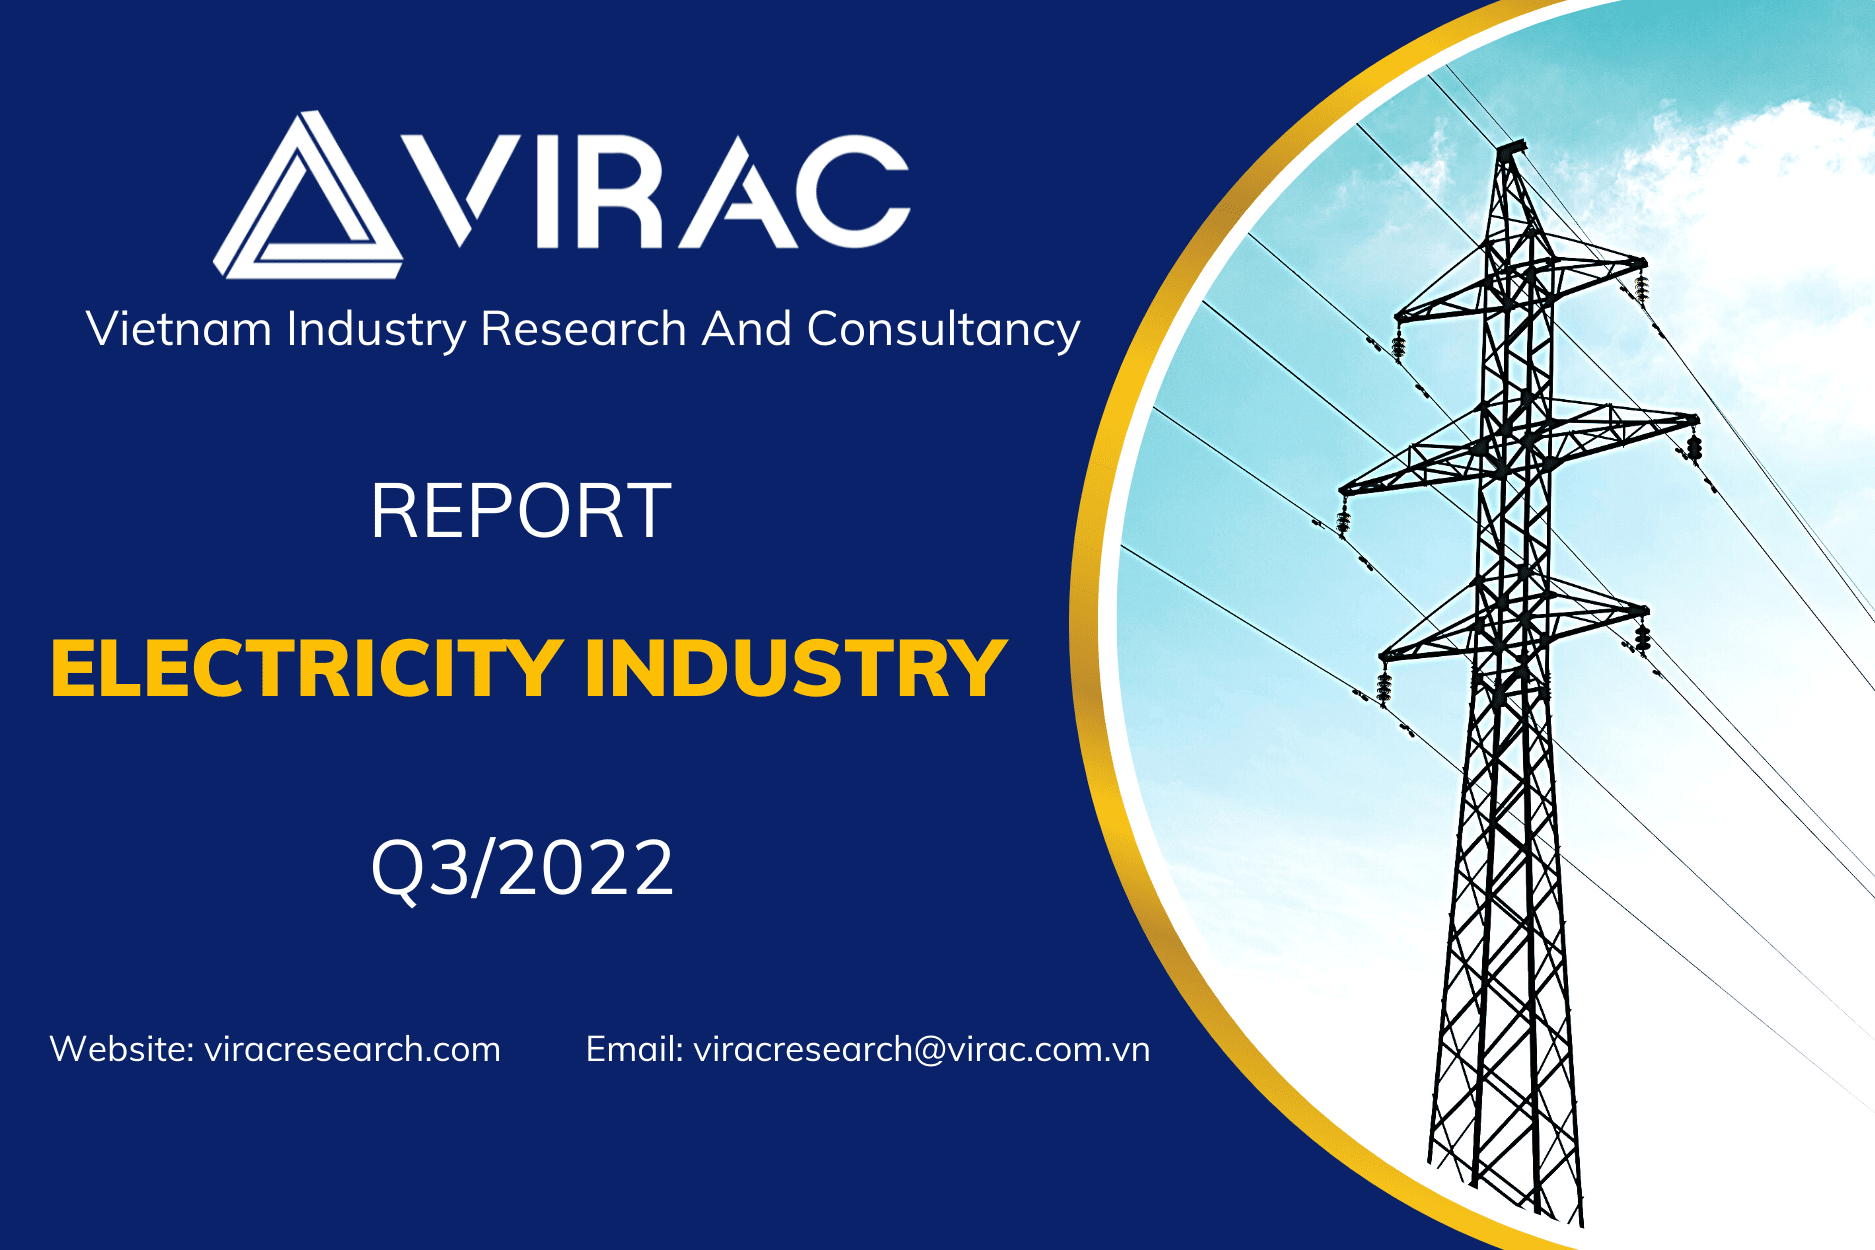 Vietnam electricity industry report Q3/2022